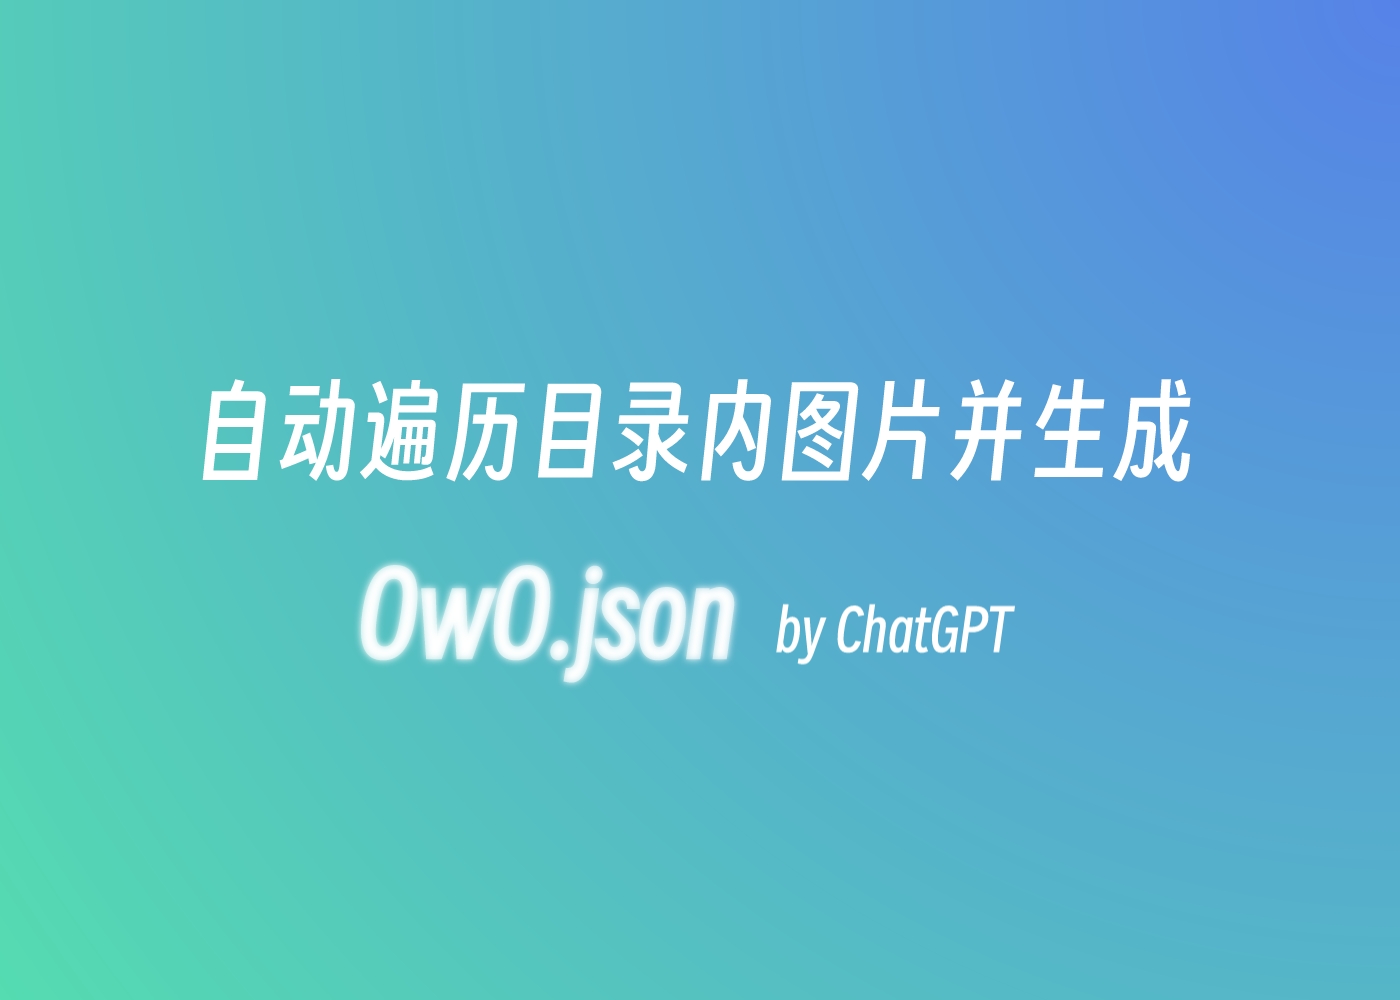 自动遍历目录内图片并生成 owo.json by ChatGPT